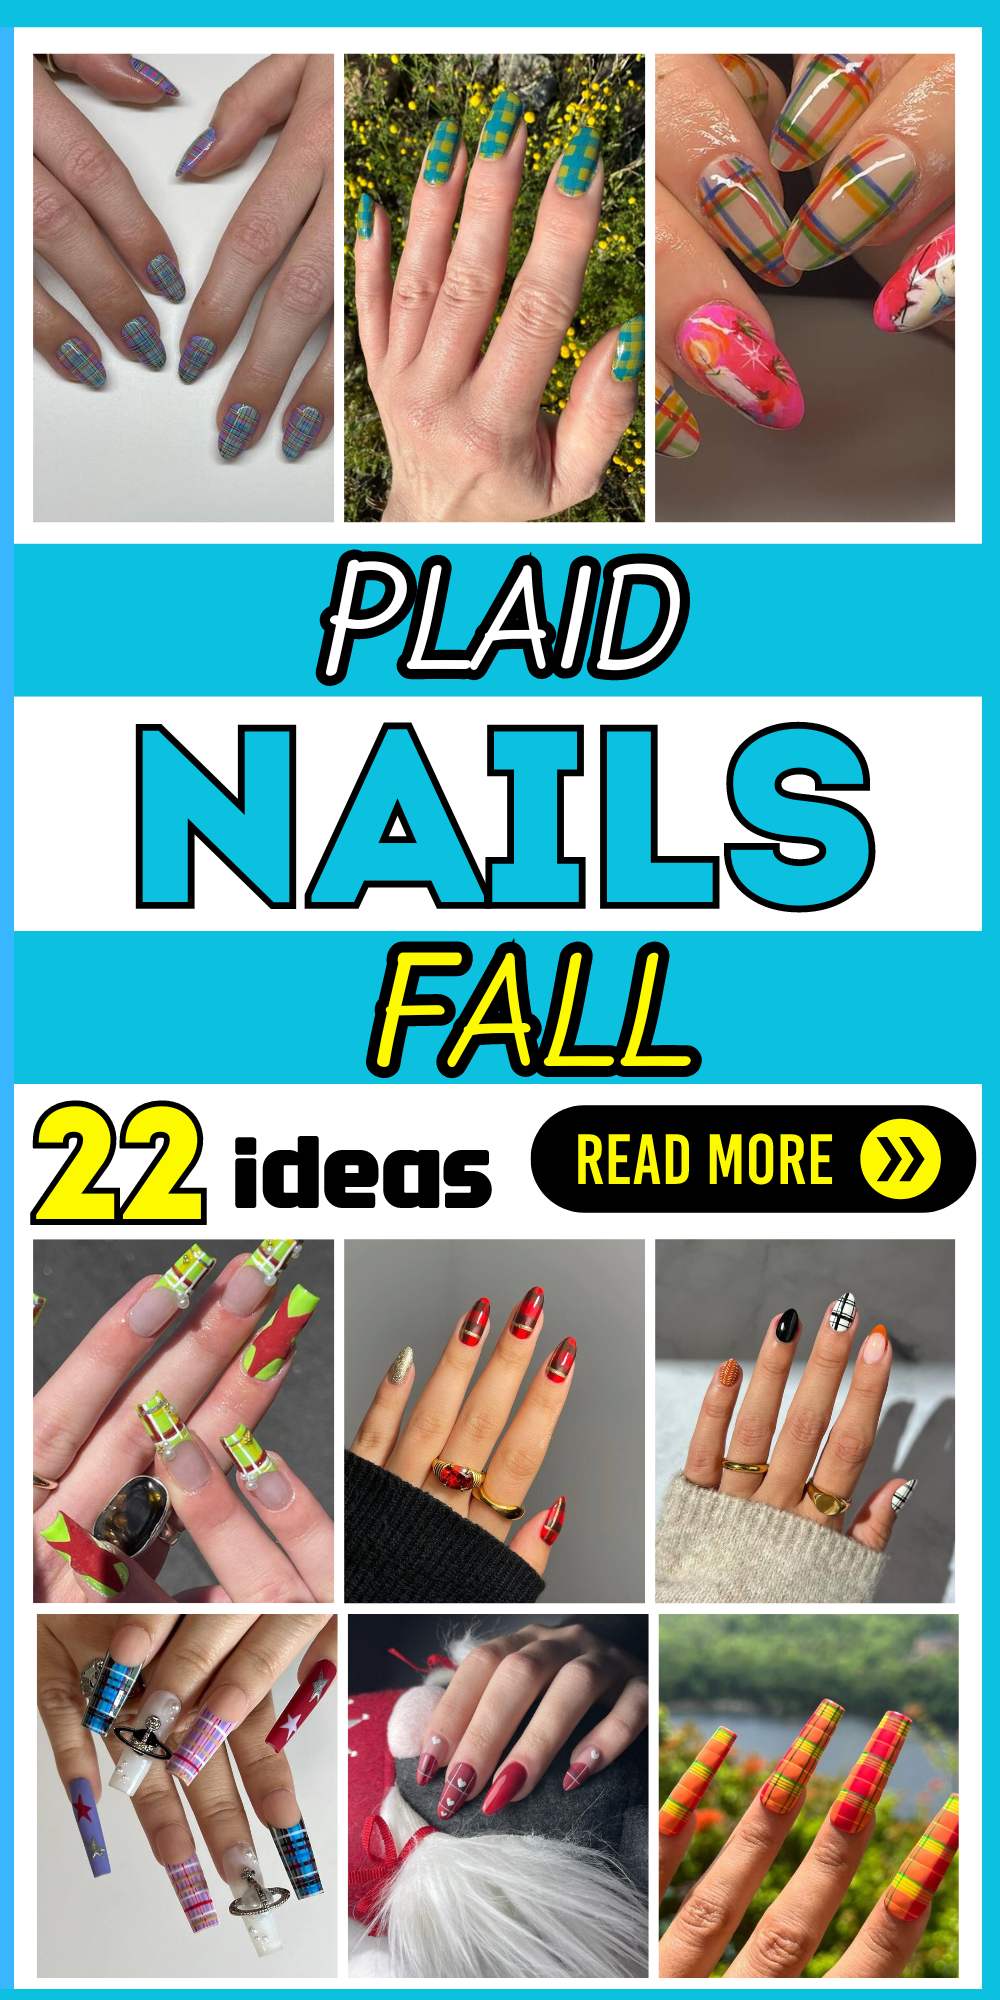 22 Chic Fall Plaid Nail Designs to Try This Season